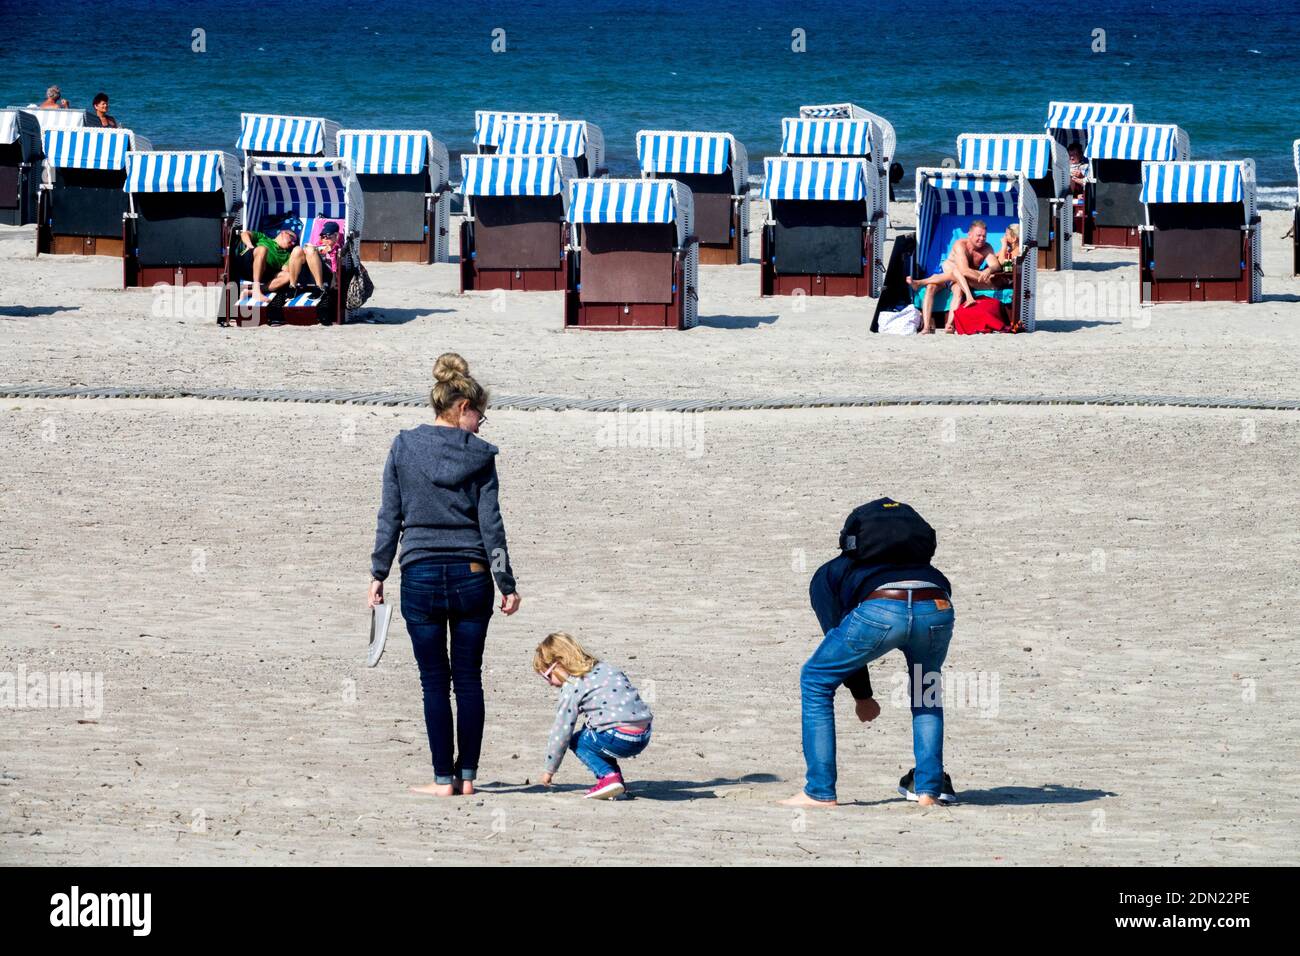 Famille sur la plage collectionne coquillages Allemagne Mer Baltique Banque D'Images